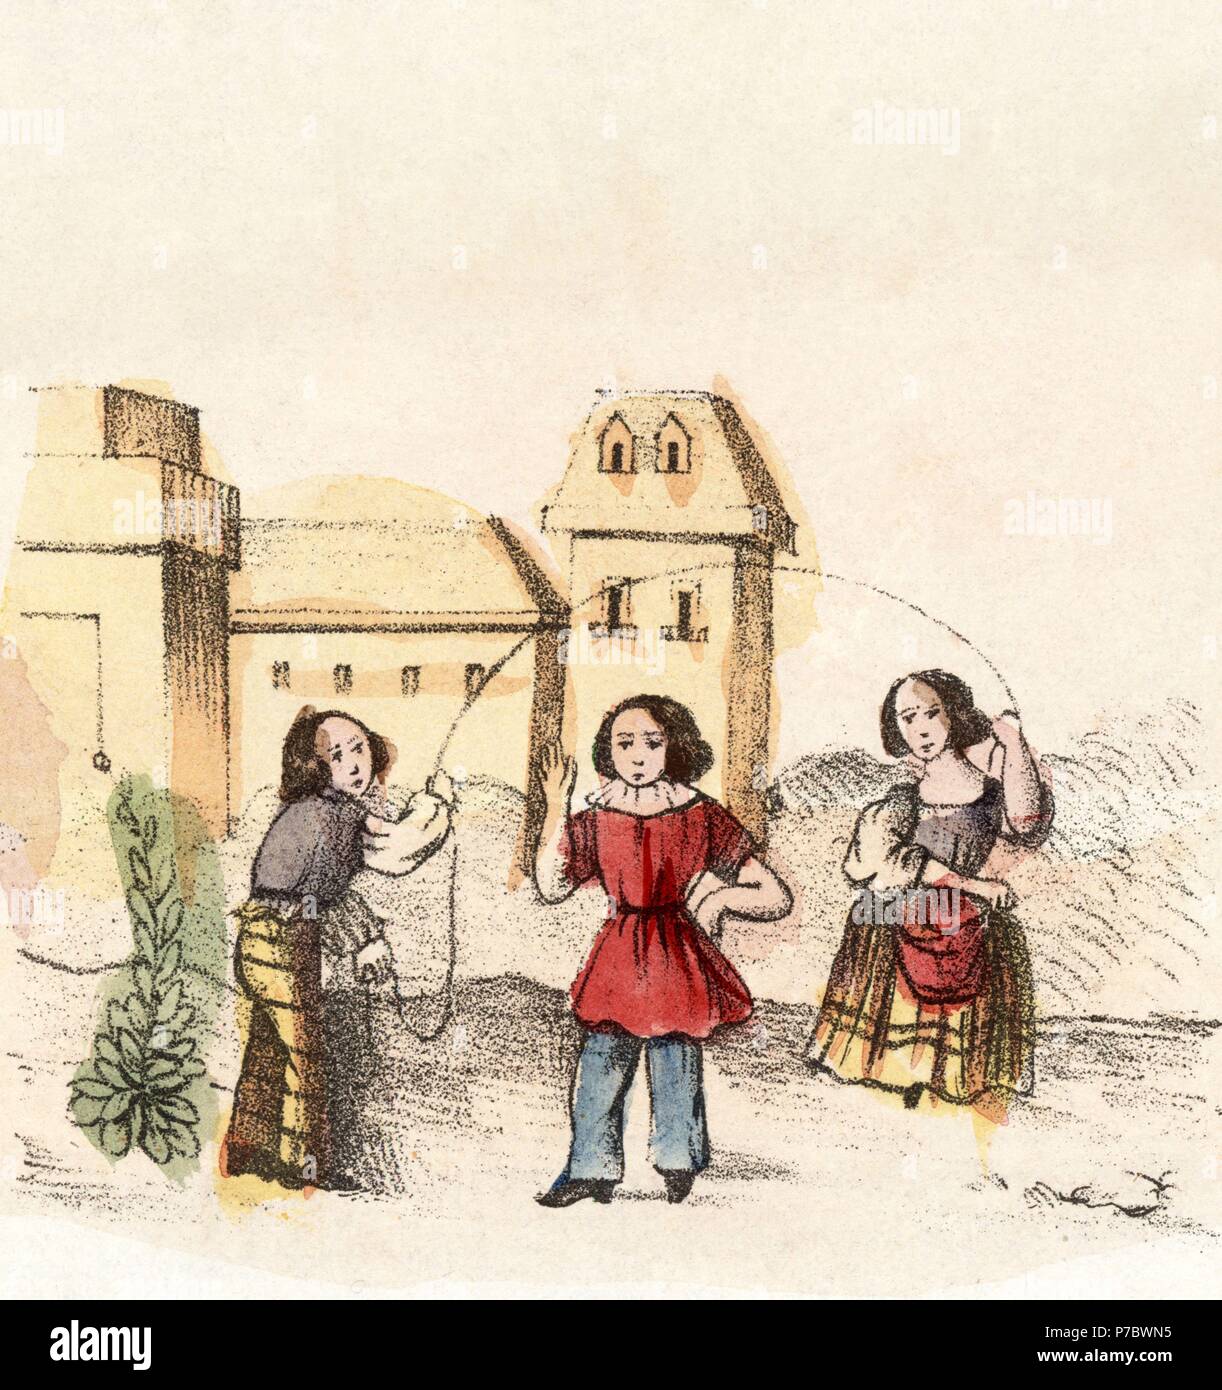 Juegos infantiles. Niñas saltando a la comba con una cuerda. Grabado popular coloreado a mano. Siglo XVIII. Stock Photo